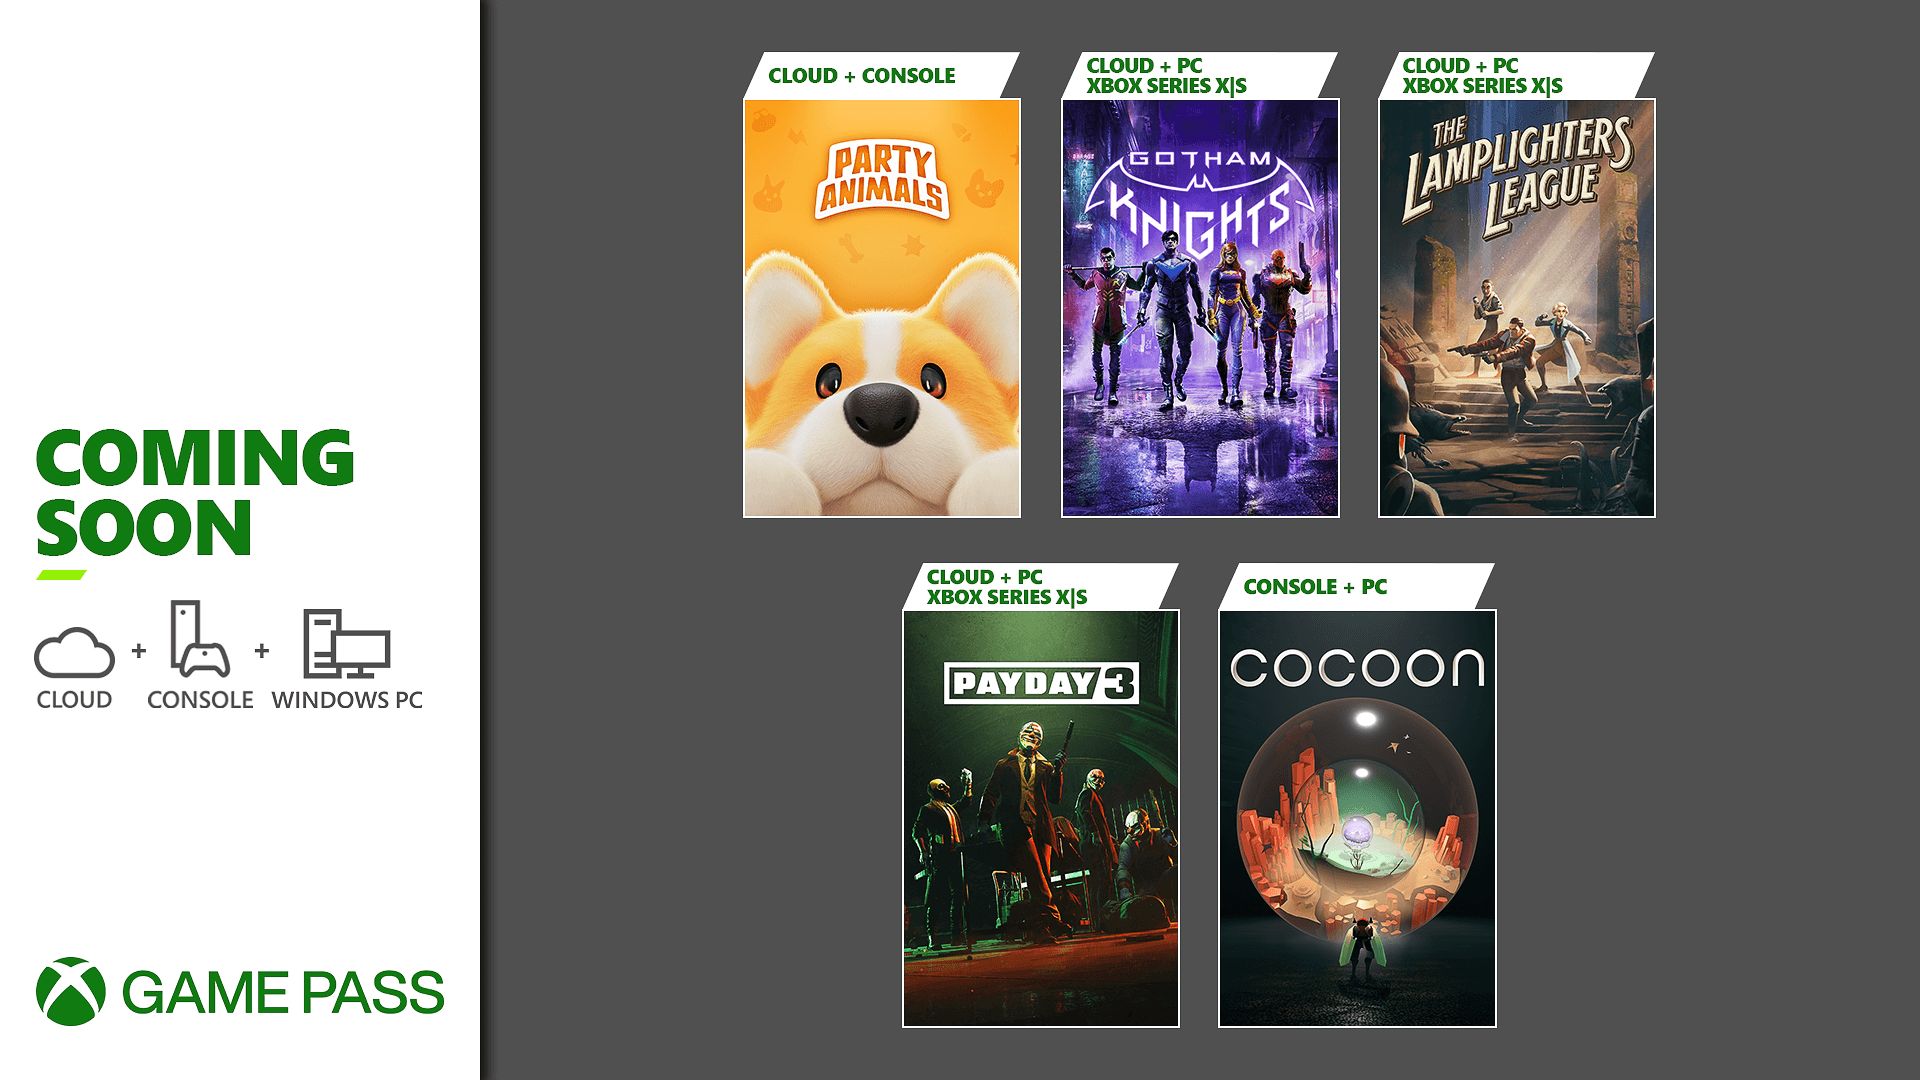 5 melhores jogos independentes no Xbox Game Pass (setembro de 2023) 